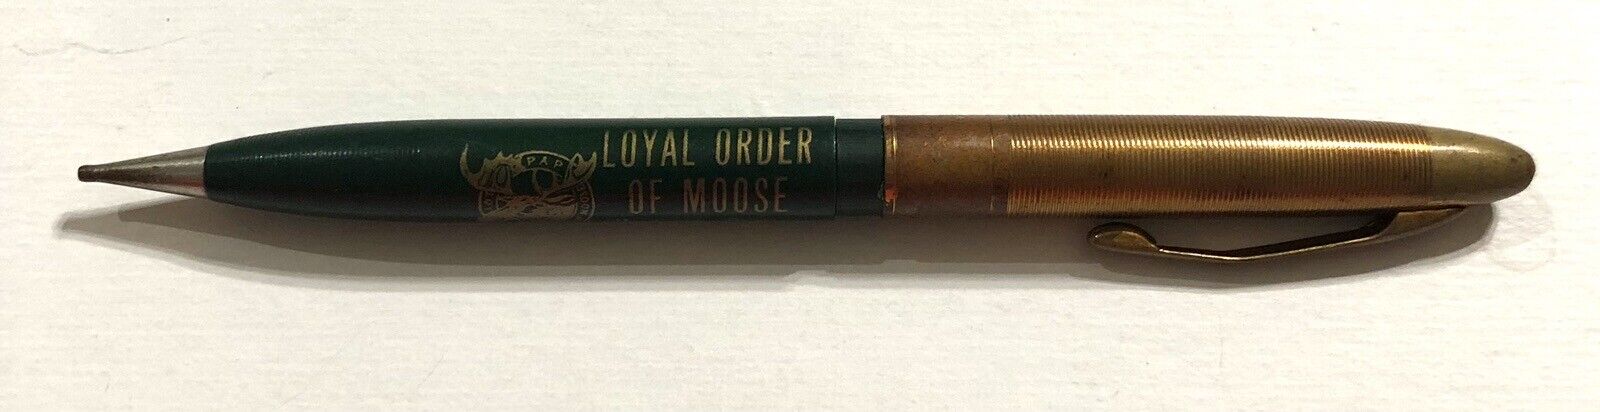 Vintage Loyal Order Of Moose Hastings, PA Mechanical Advertising Pencil